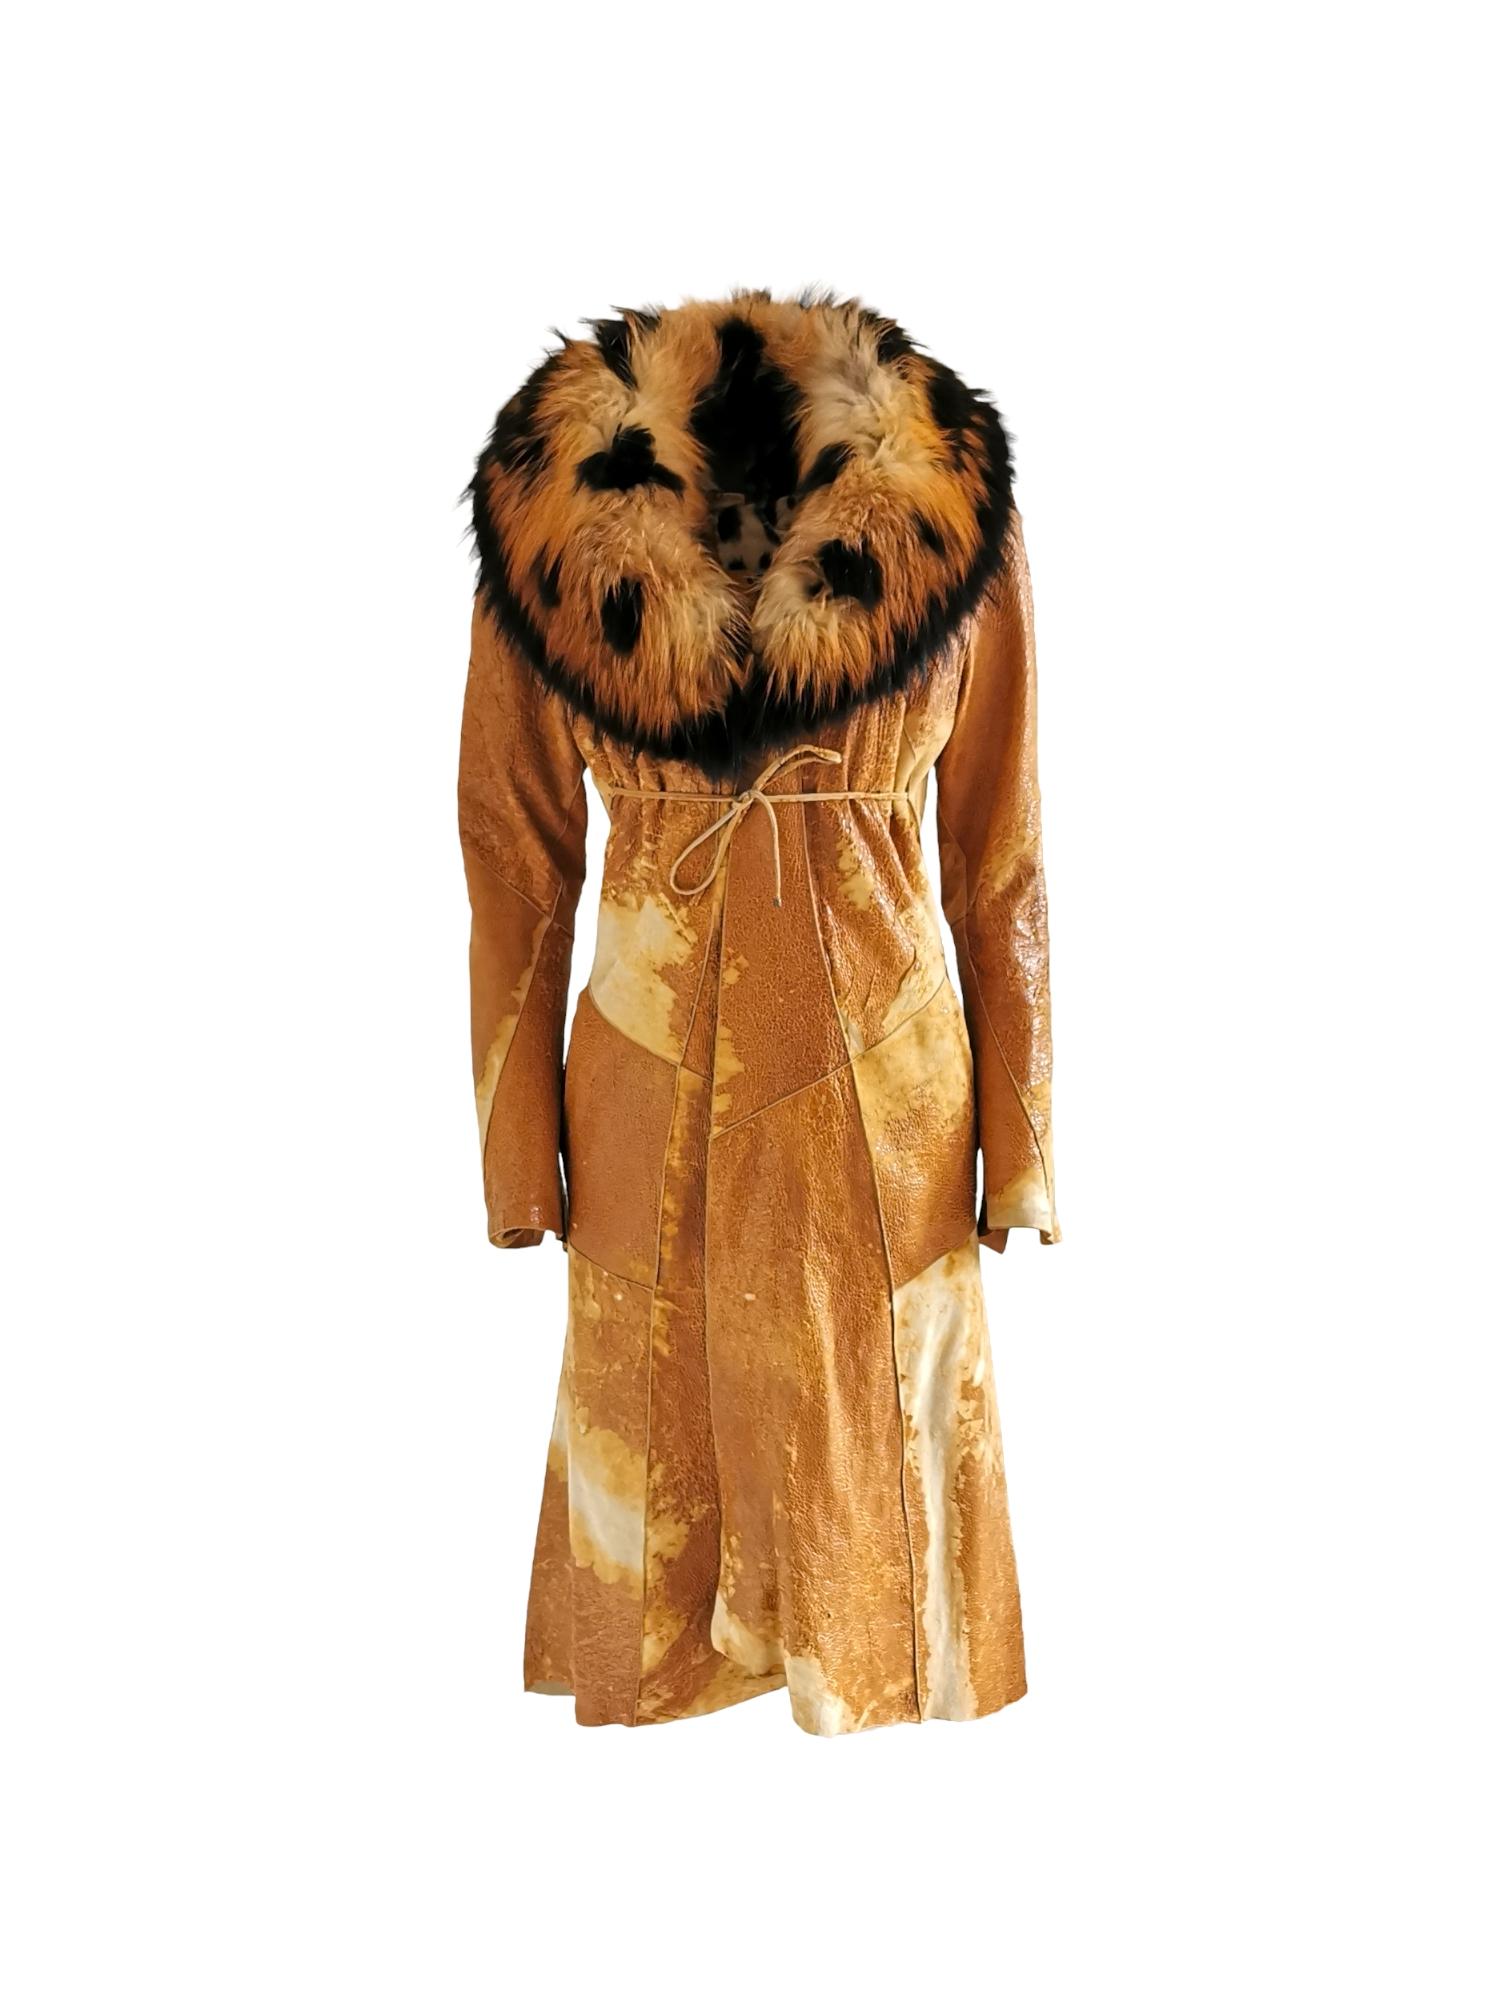 Roberto Cavalli leather coat, FW 2002 For Sale 1